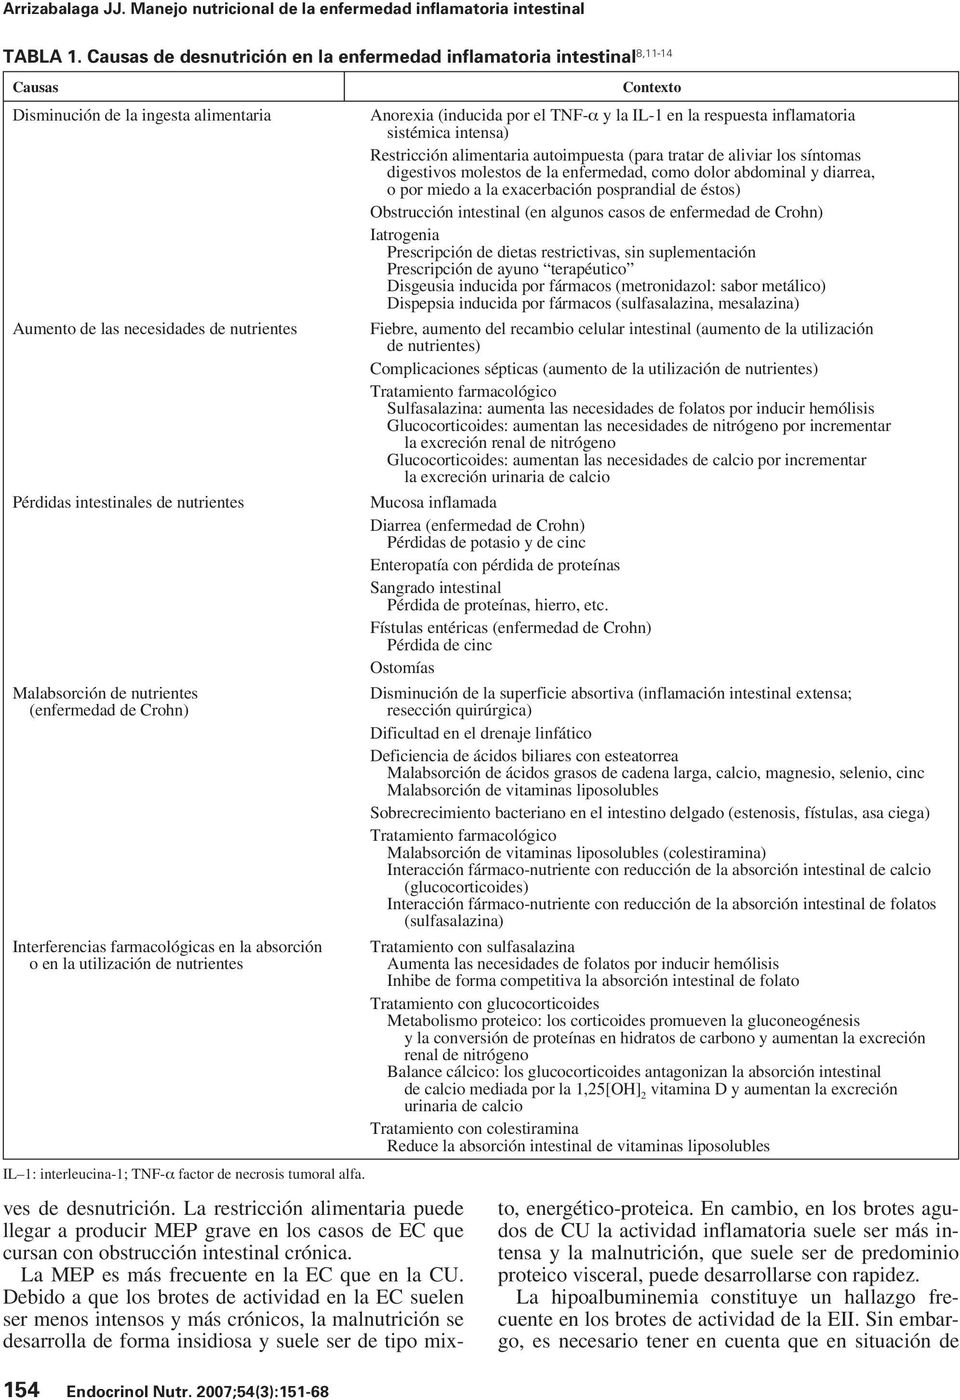 Malabsorción de nutrientes (enfermedad de Crohn) Interferencias farmacológicas en la absorción o en la utilización de nutrientes IL 1: interleucina-1; TNF-α factor de necrosis tumoral alfa.